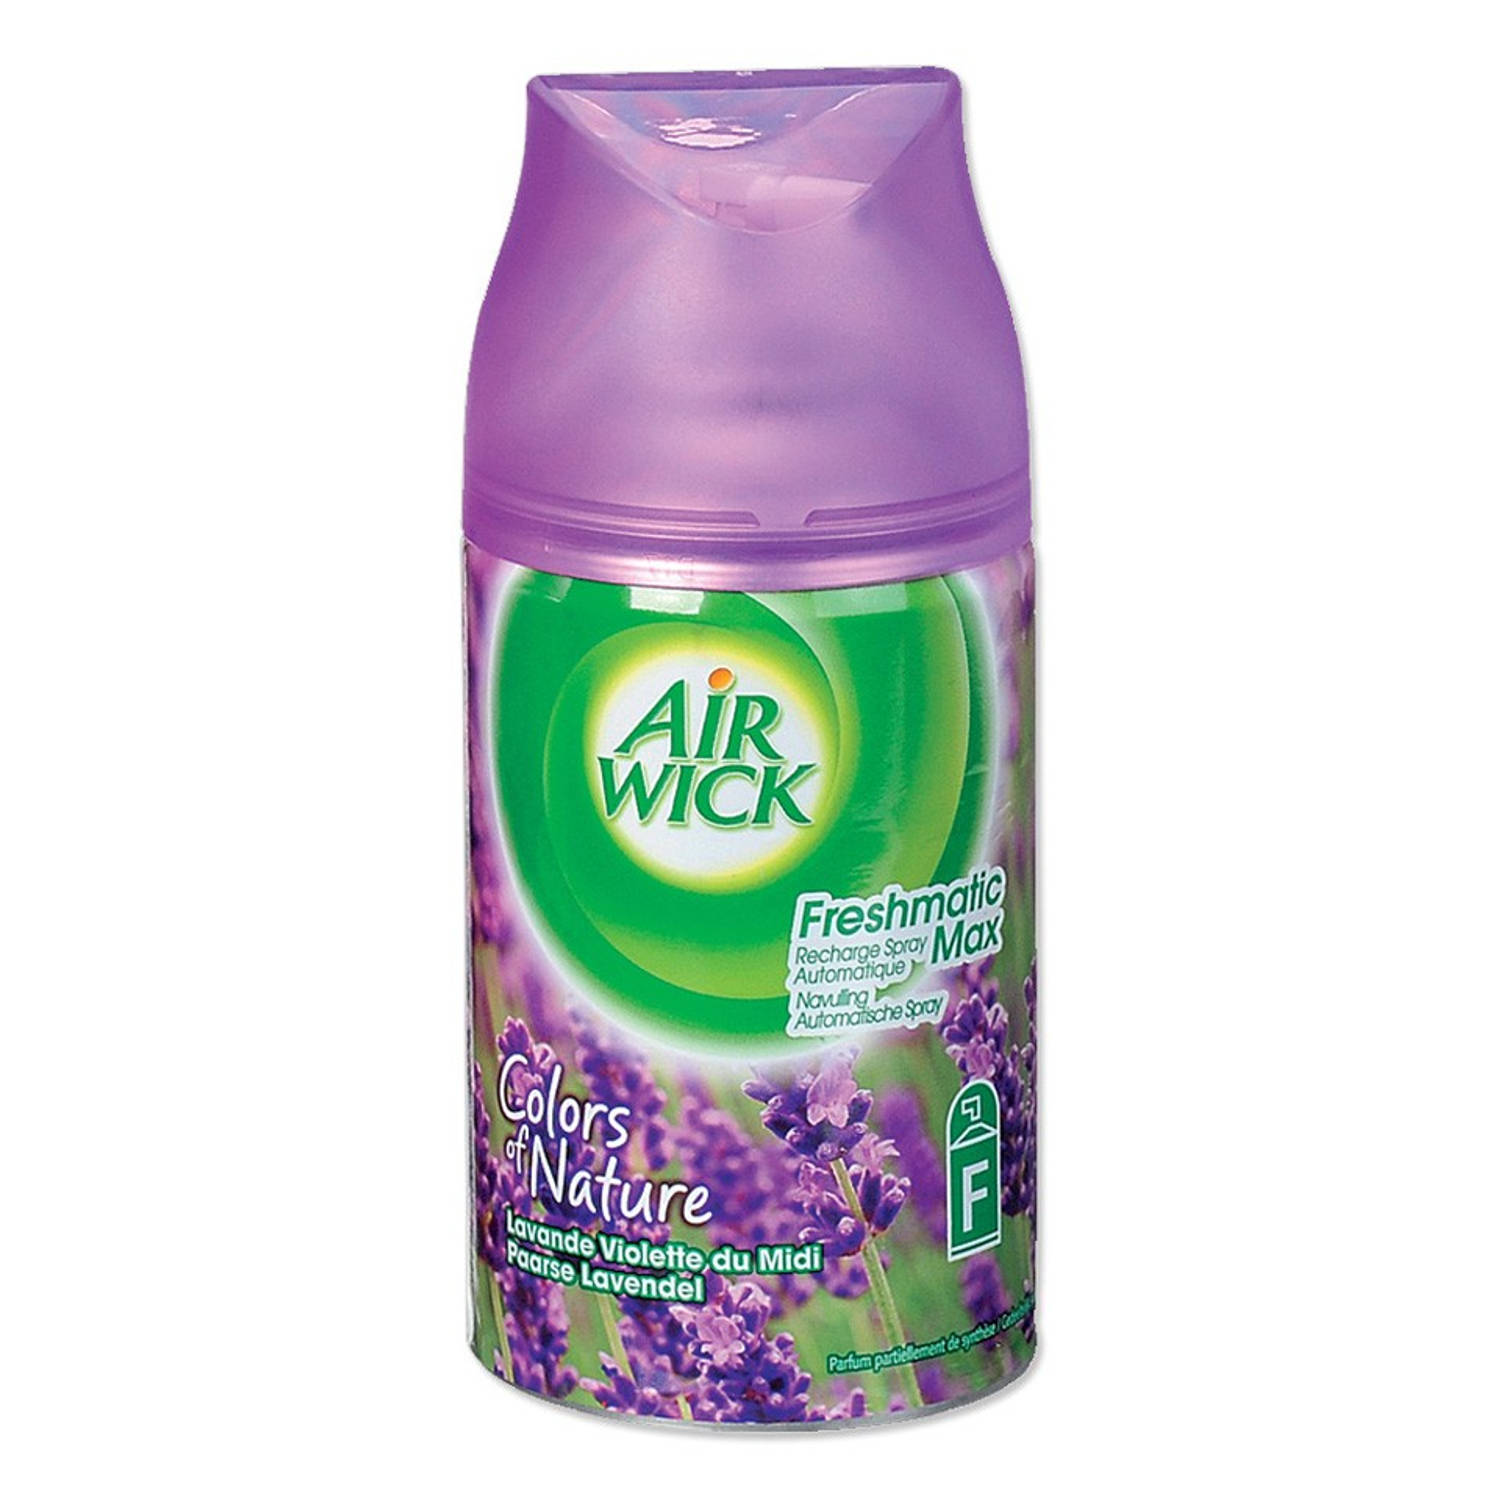 Onderverdelen stapel rustig aan Air Wick Freshmatic Max Paarse Lavendel navulling | Blokker